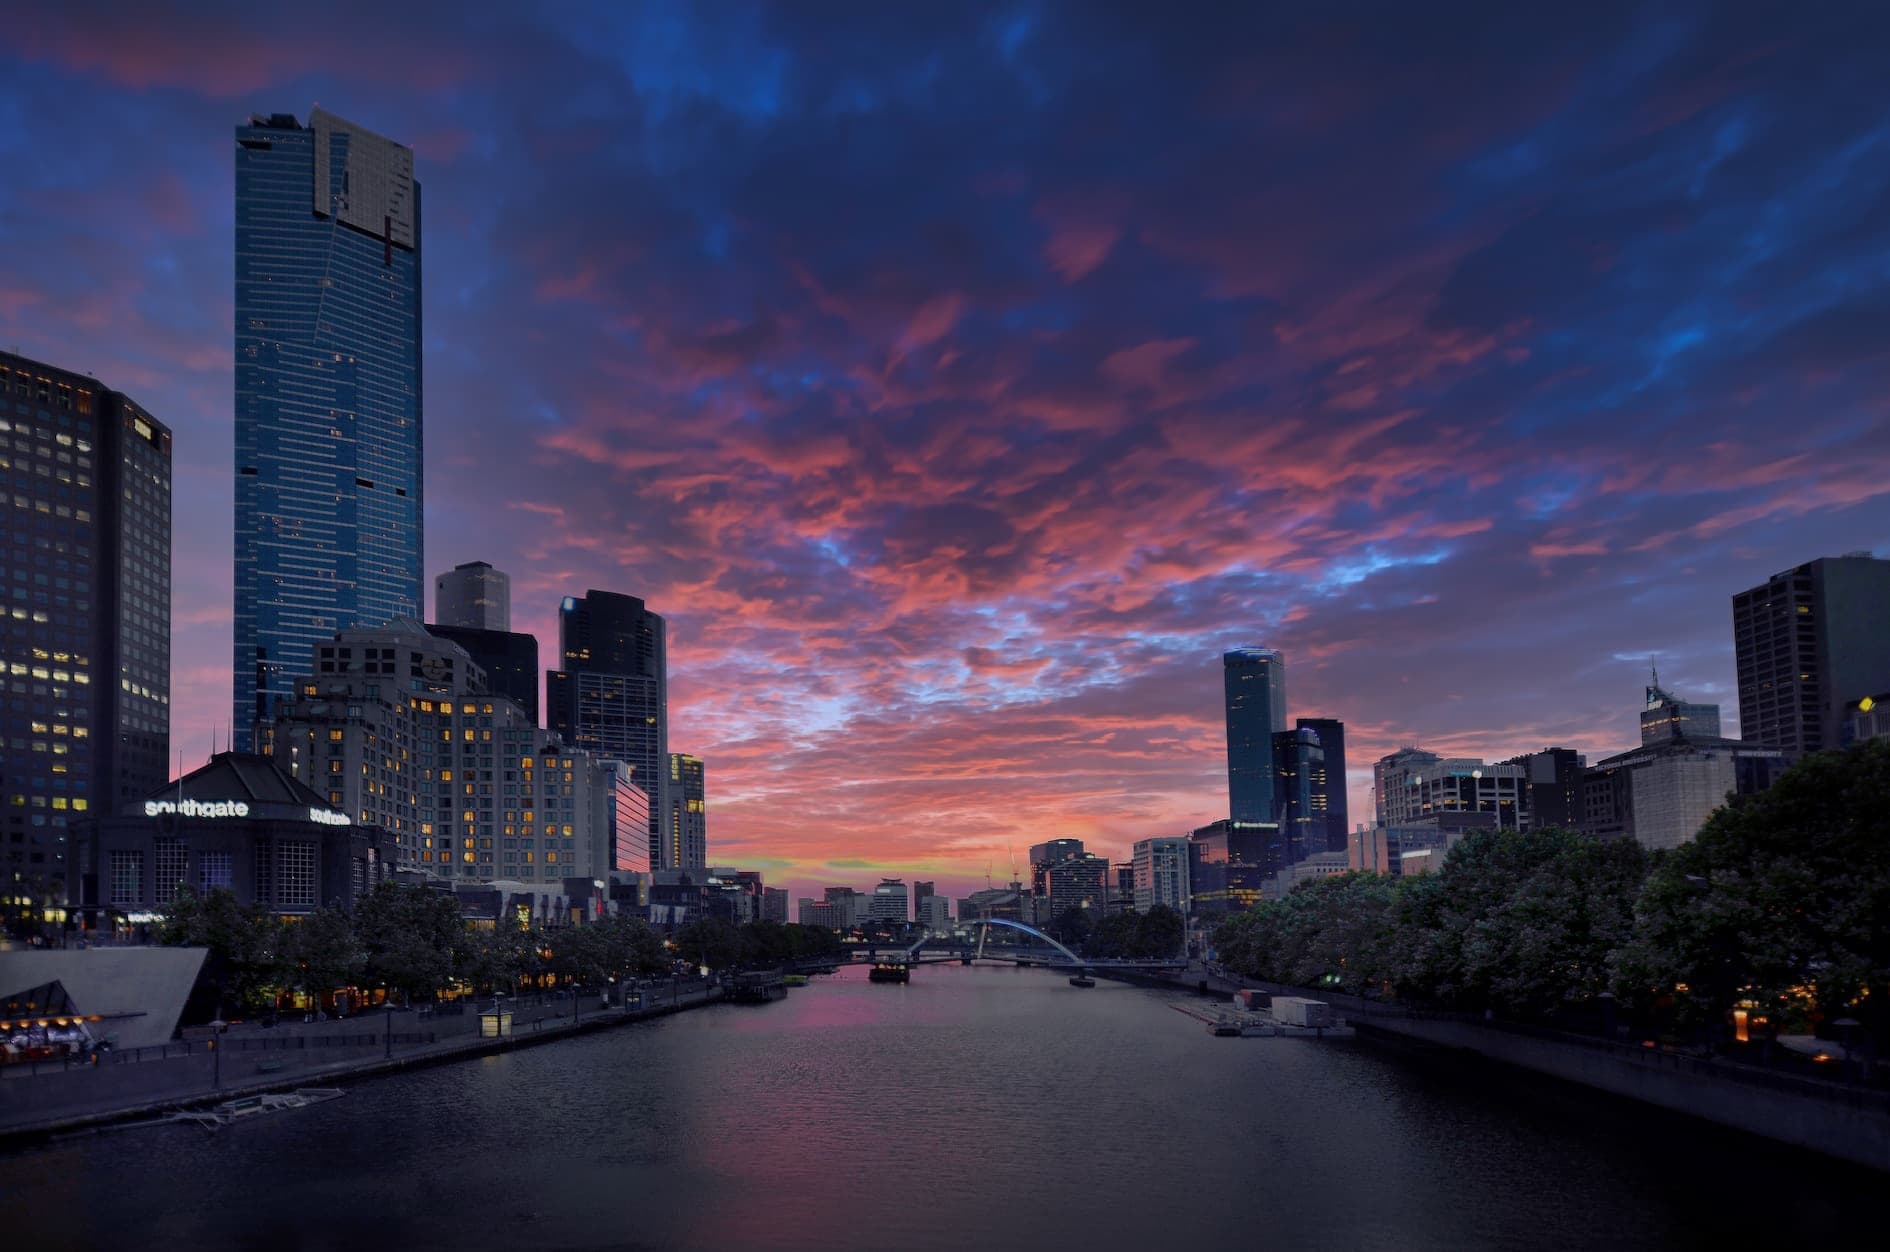 Melbourne Yarra sunset